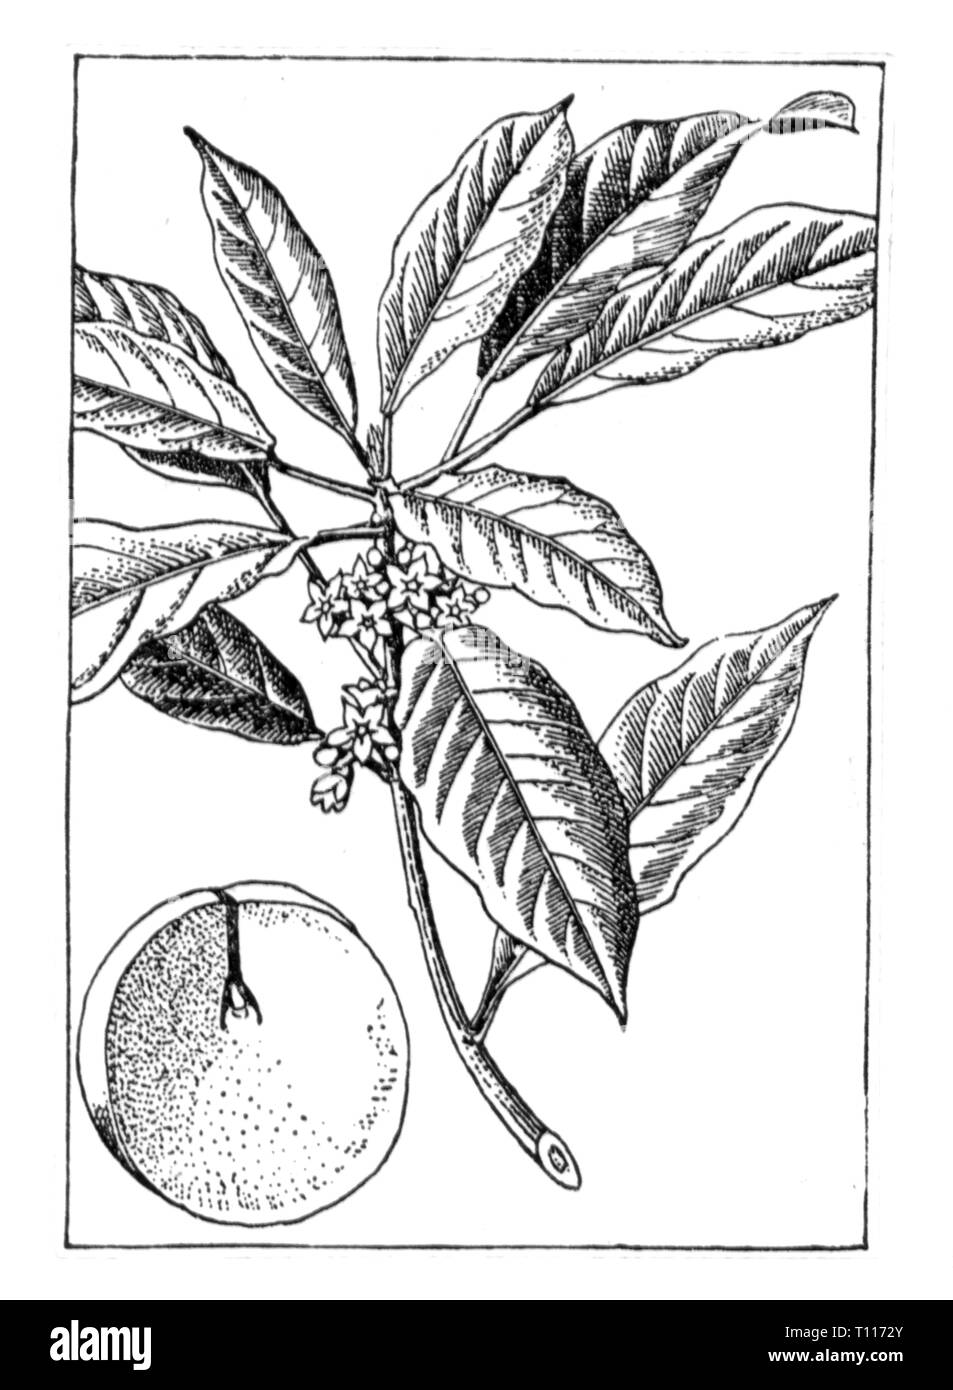 La botanica, cola cola il dado, ramo e foglie, disegno del xx secolo, Additional-Rights-Clearance-Info-Not-Available Foto Stock